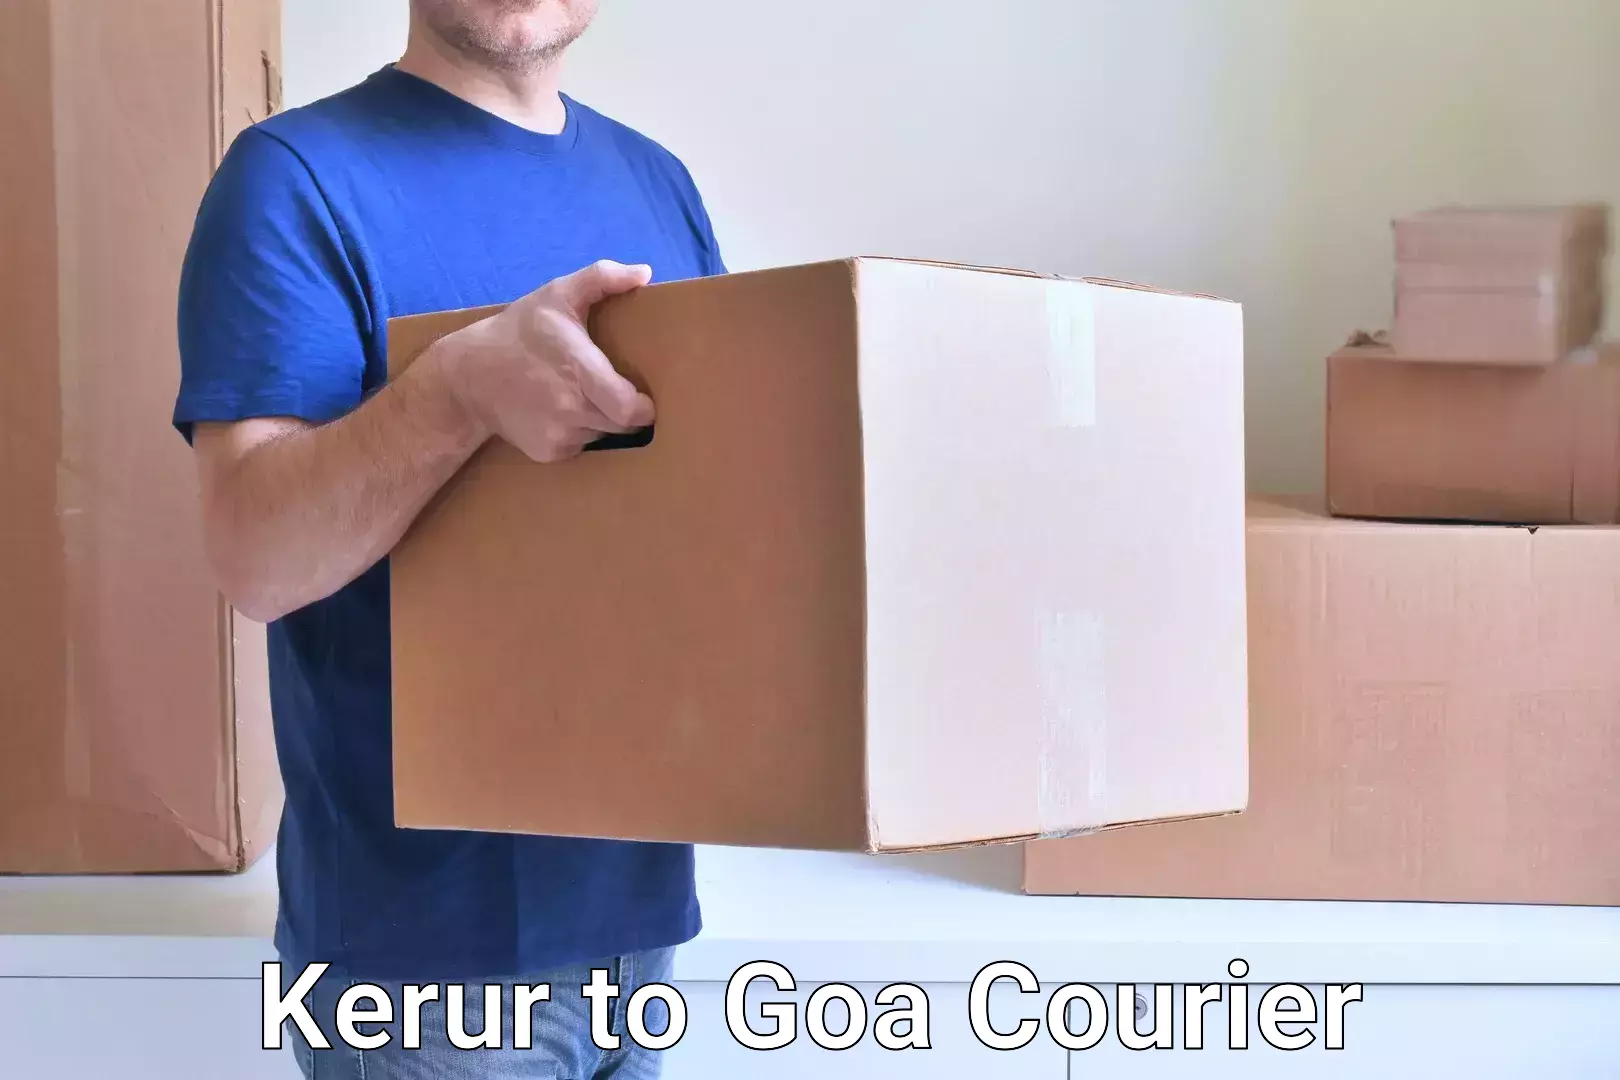 Local delivery service Kerur to Vasco da Gama